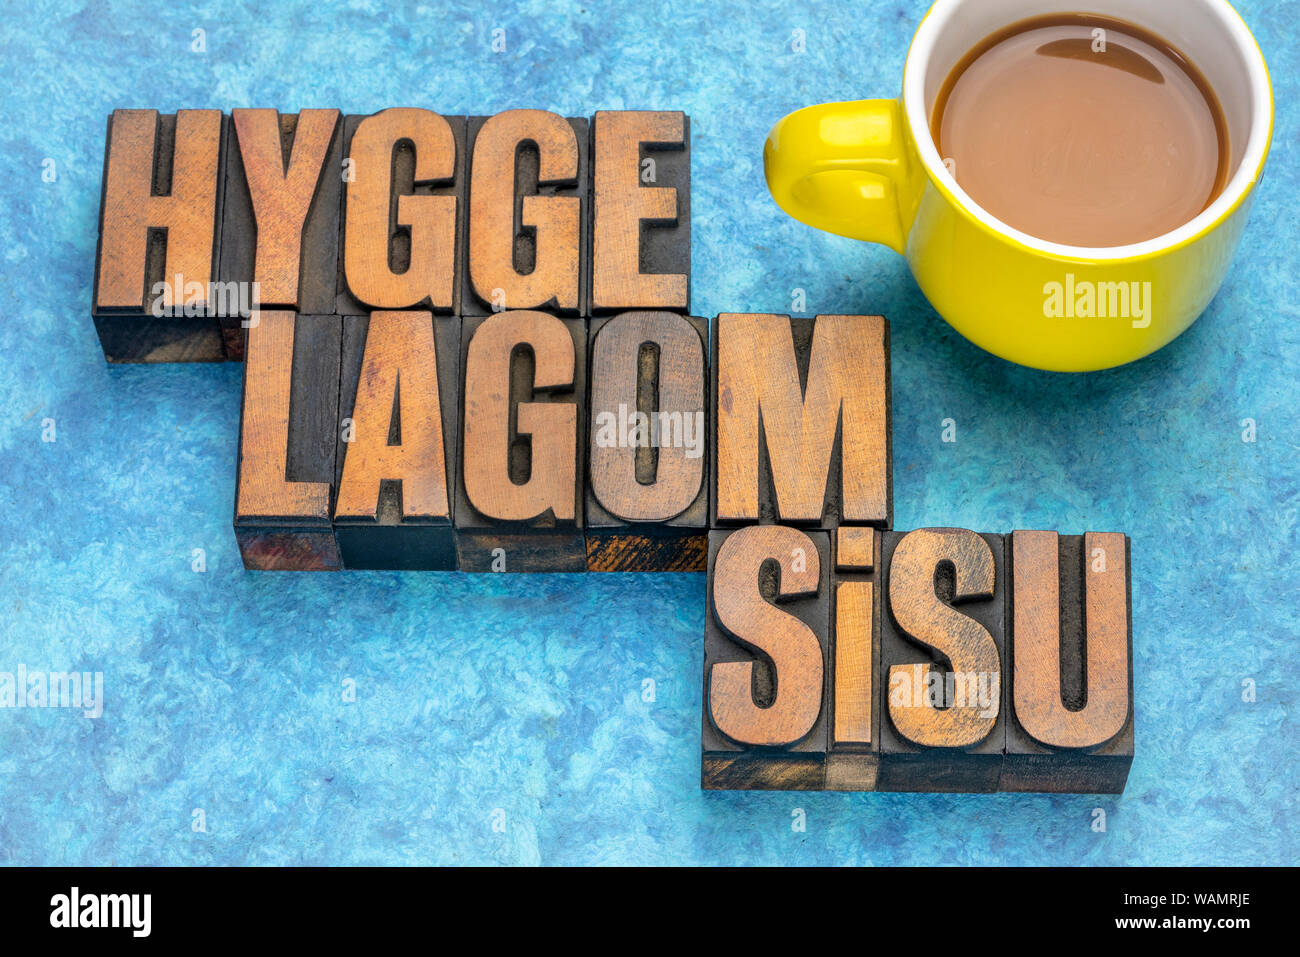 Hygge, lagom und Sisu skandinavischen lifestyle Konzepte aus Dänemark, Schweden und Finnland - Wort in Vintage buchdruck Holz Art Abstract Stockfoto